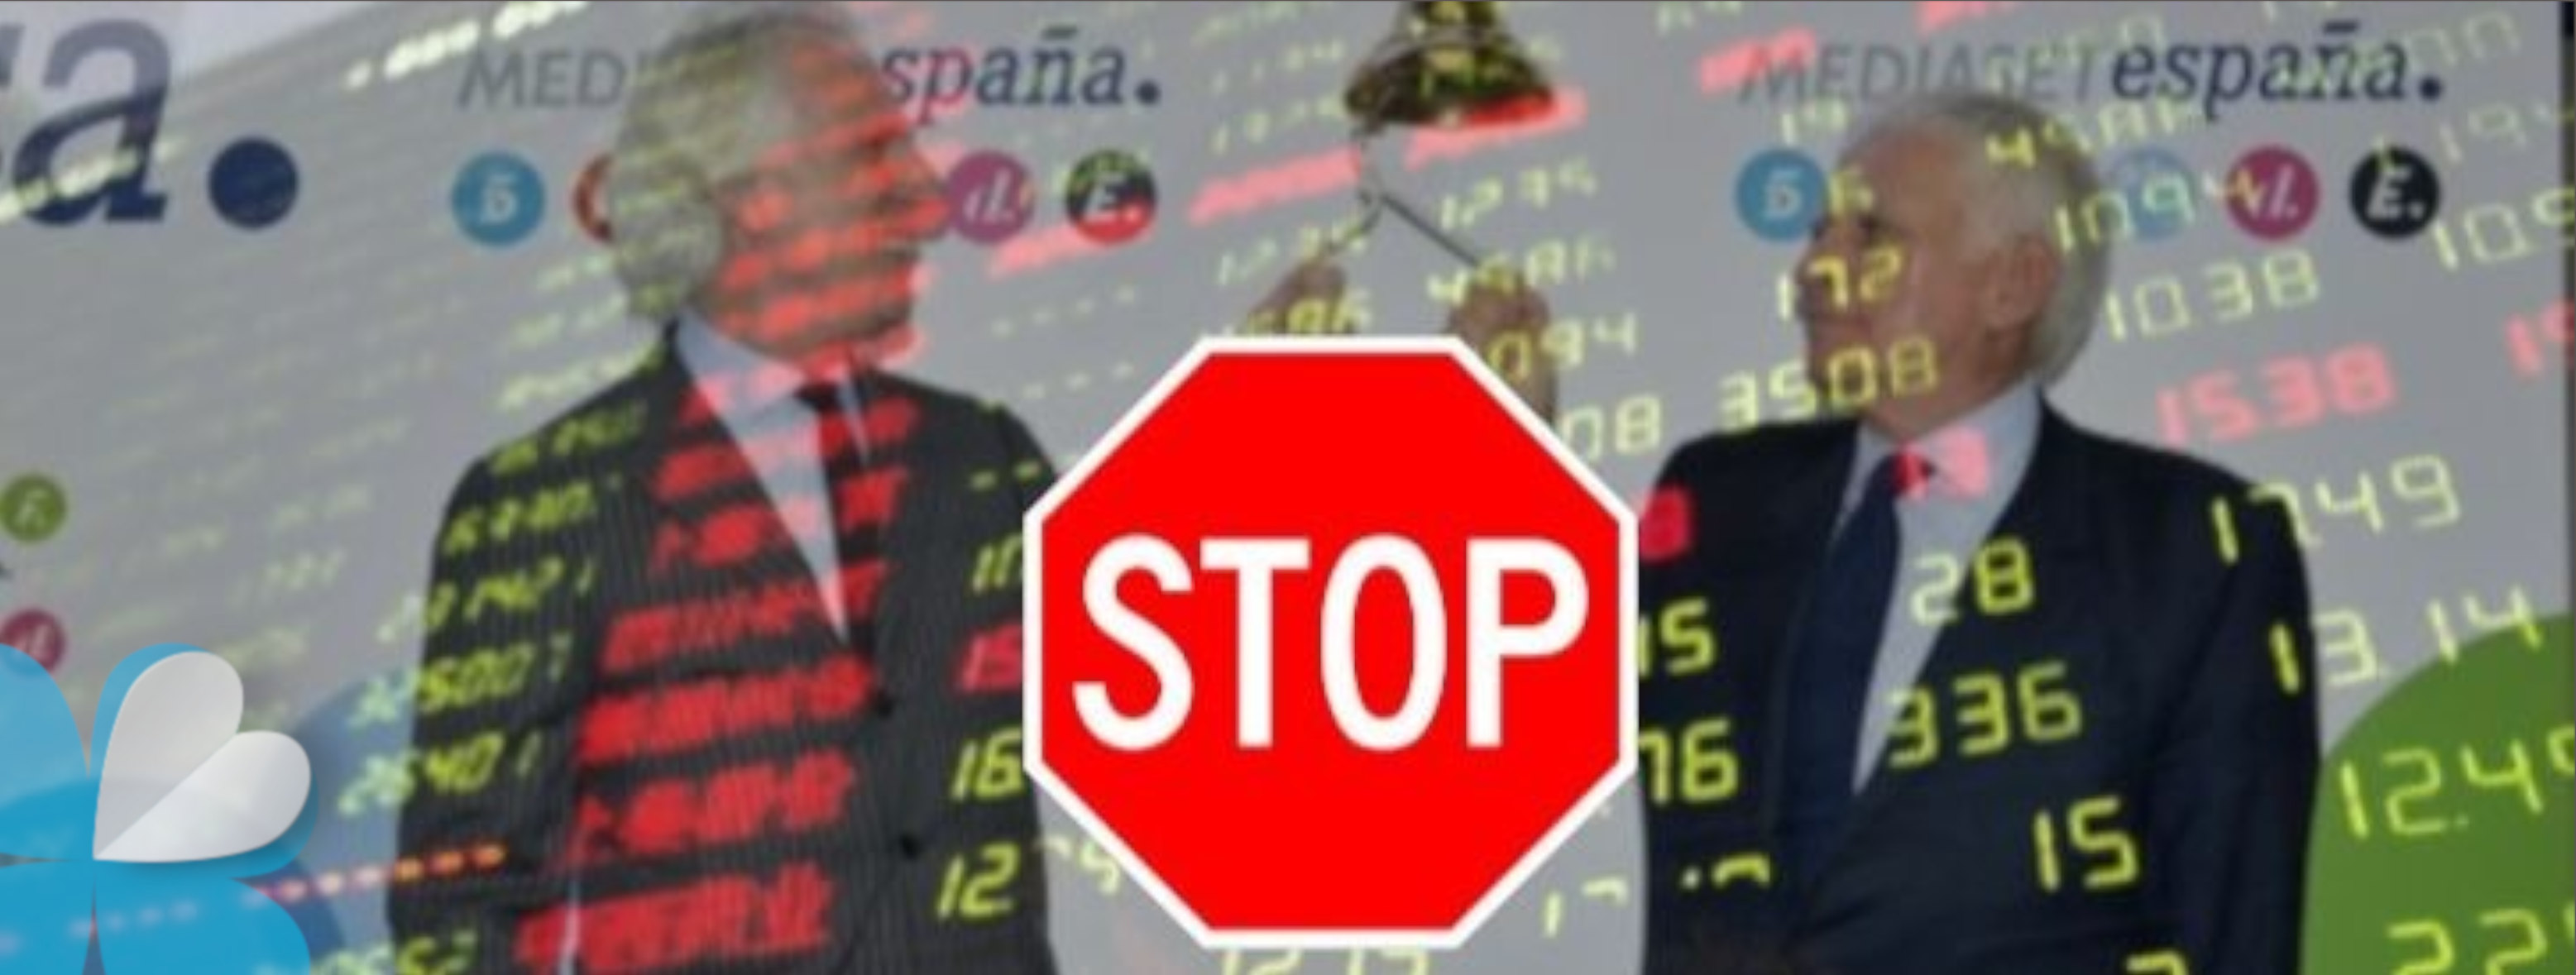 Mediaset España suspendida de cotización